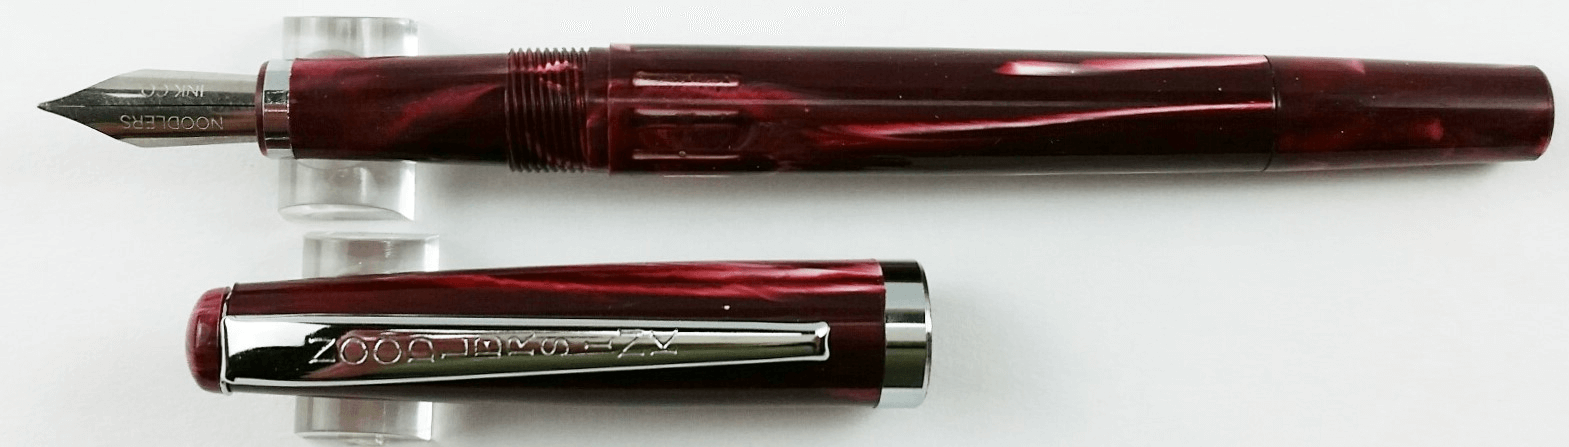 Noodler's Vulcan's Coral Standard Flex Fountain Pen